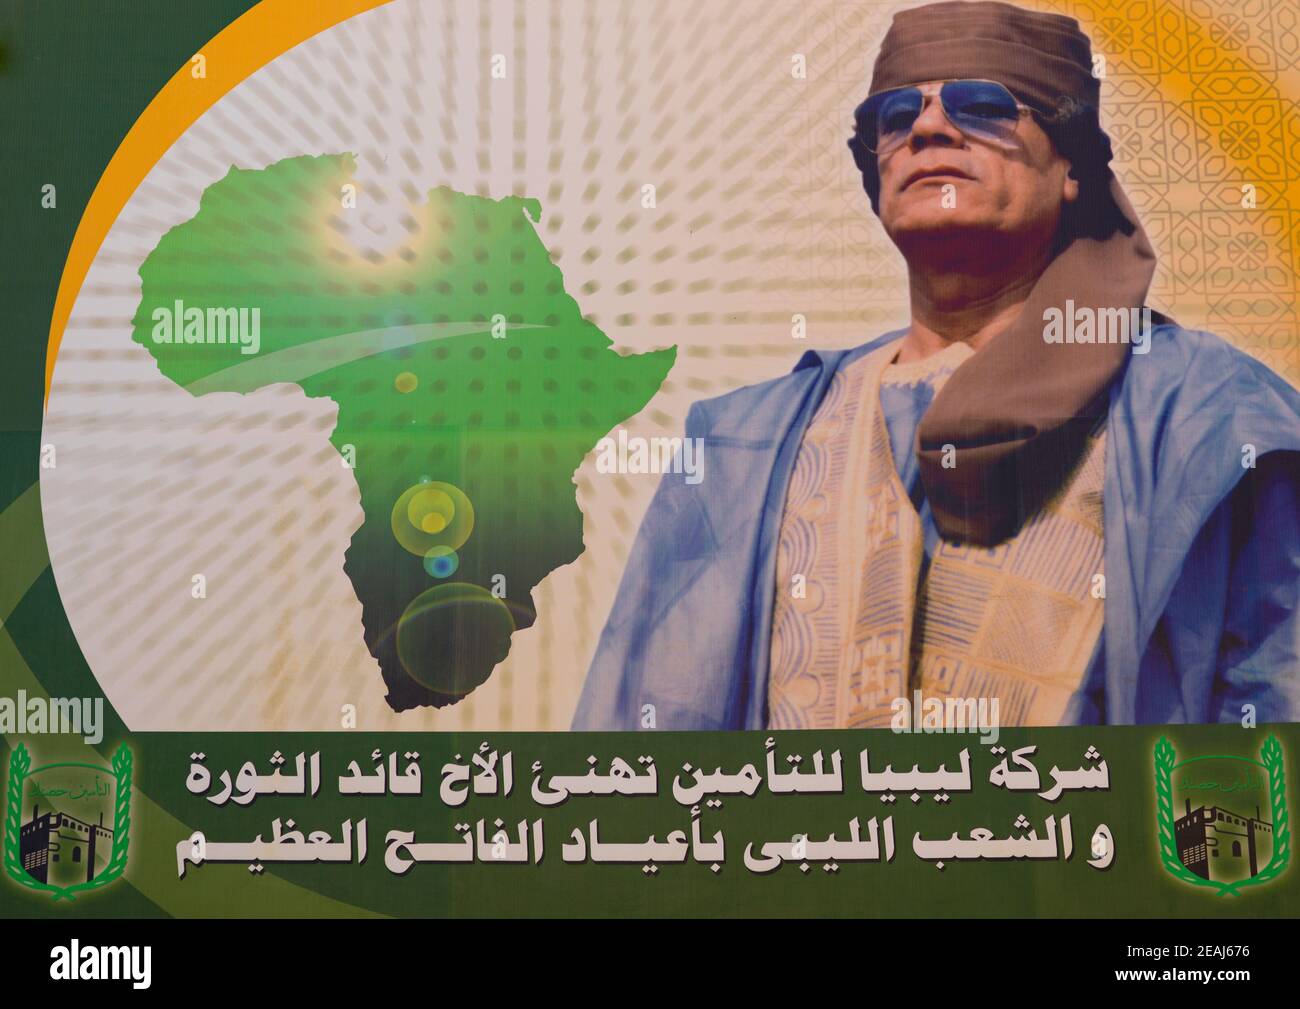 Muammar gaddafi propaganda billboard, Tripolitania, Tripoli, Libya Stock Photo